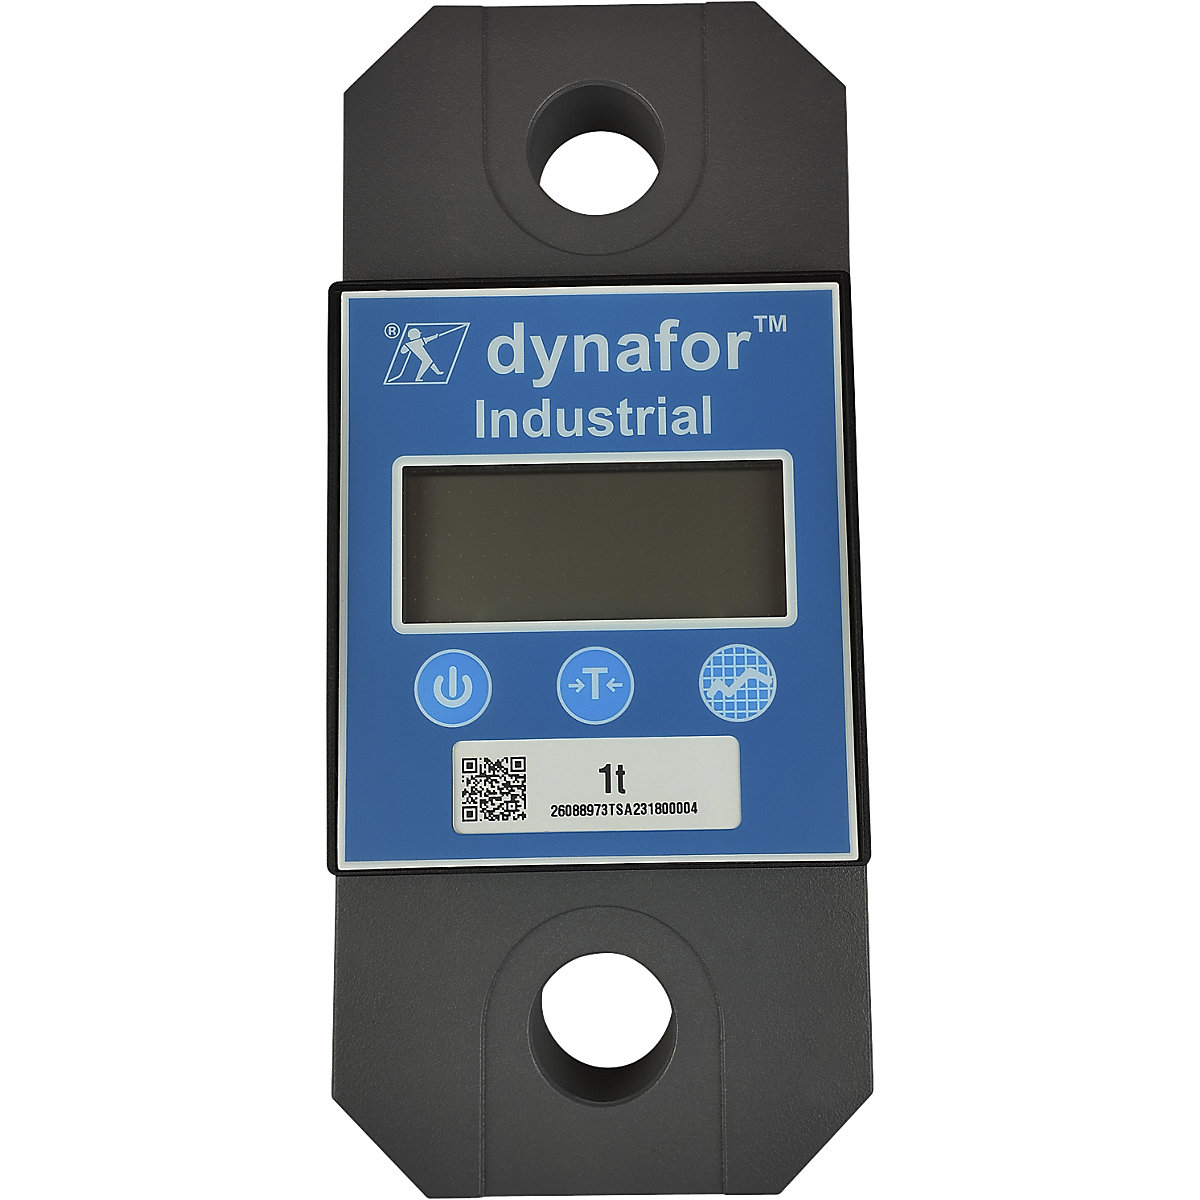 dynafor™ Industrial dynamometer